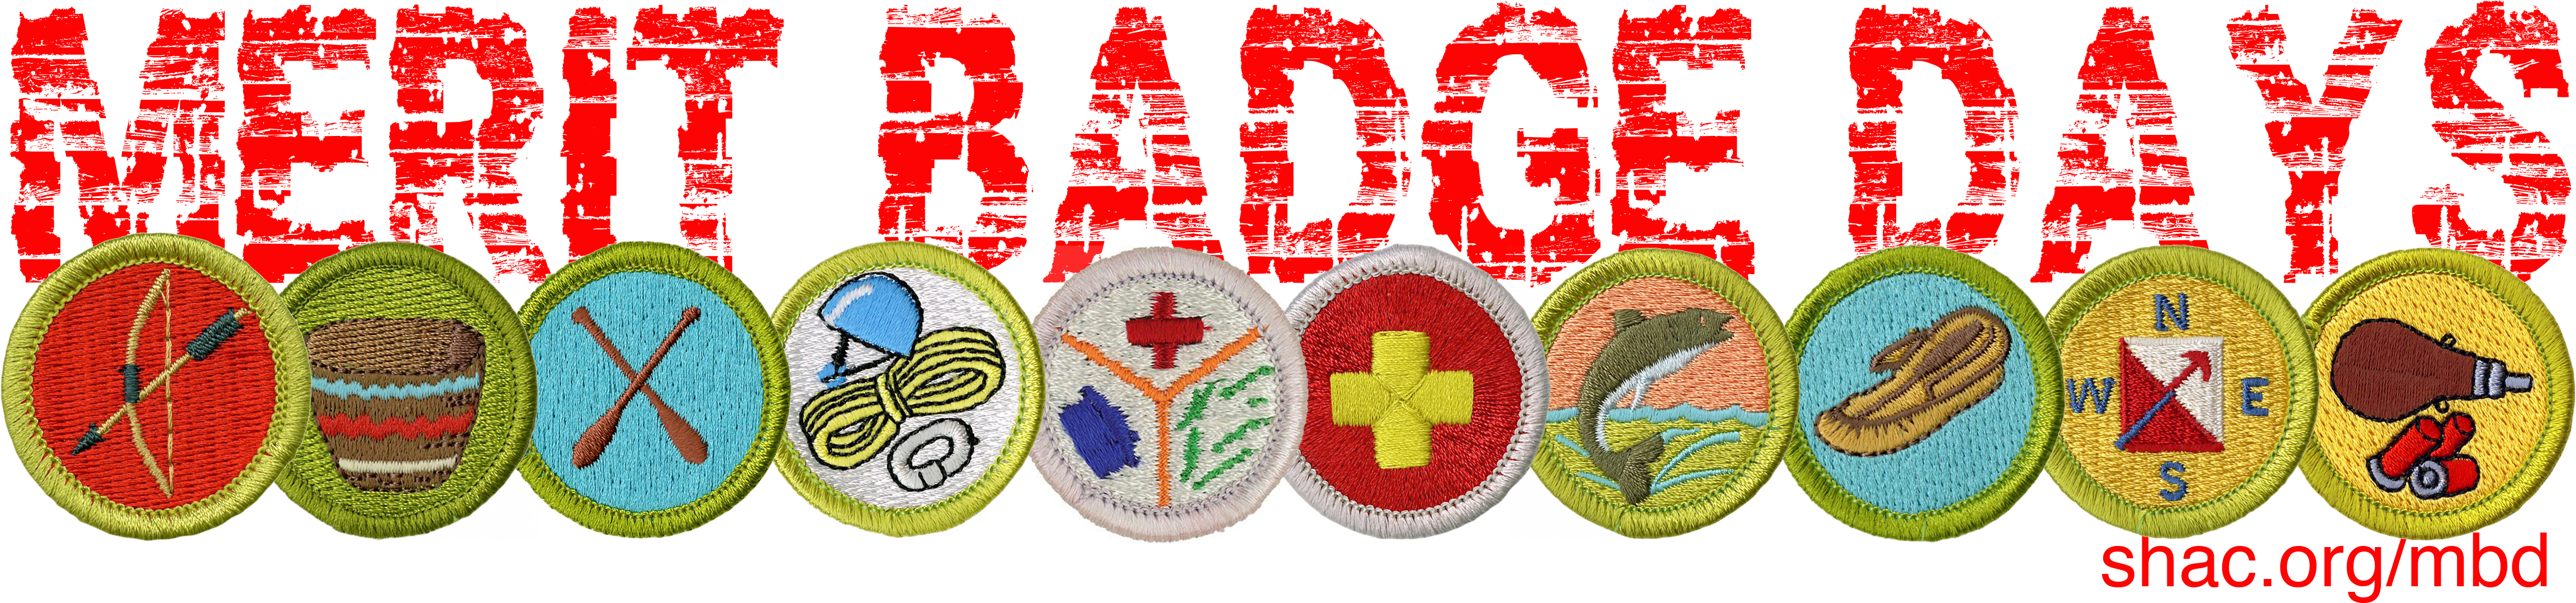 merit badge sash